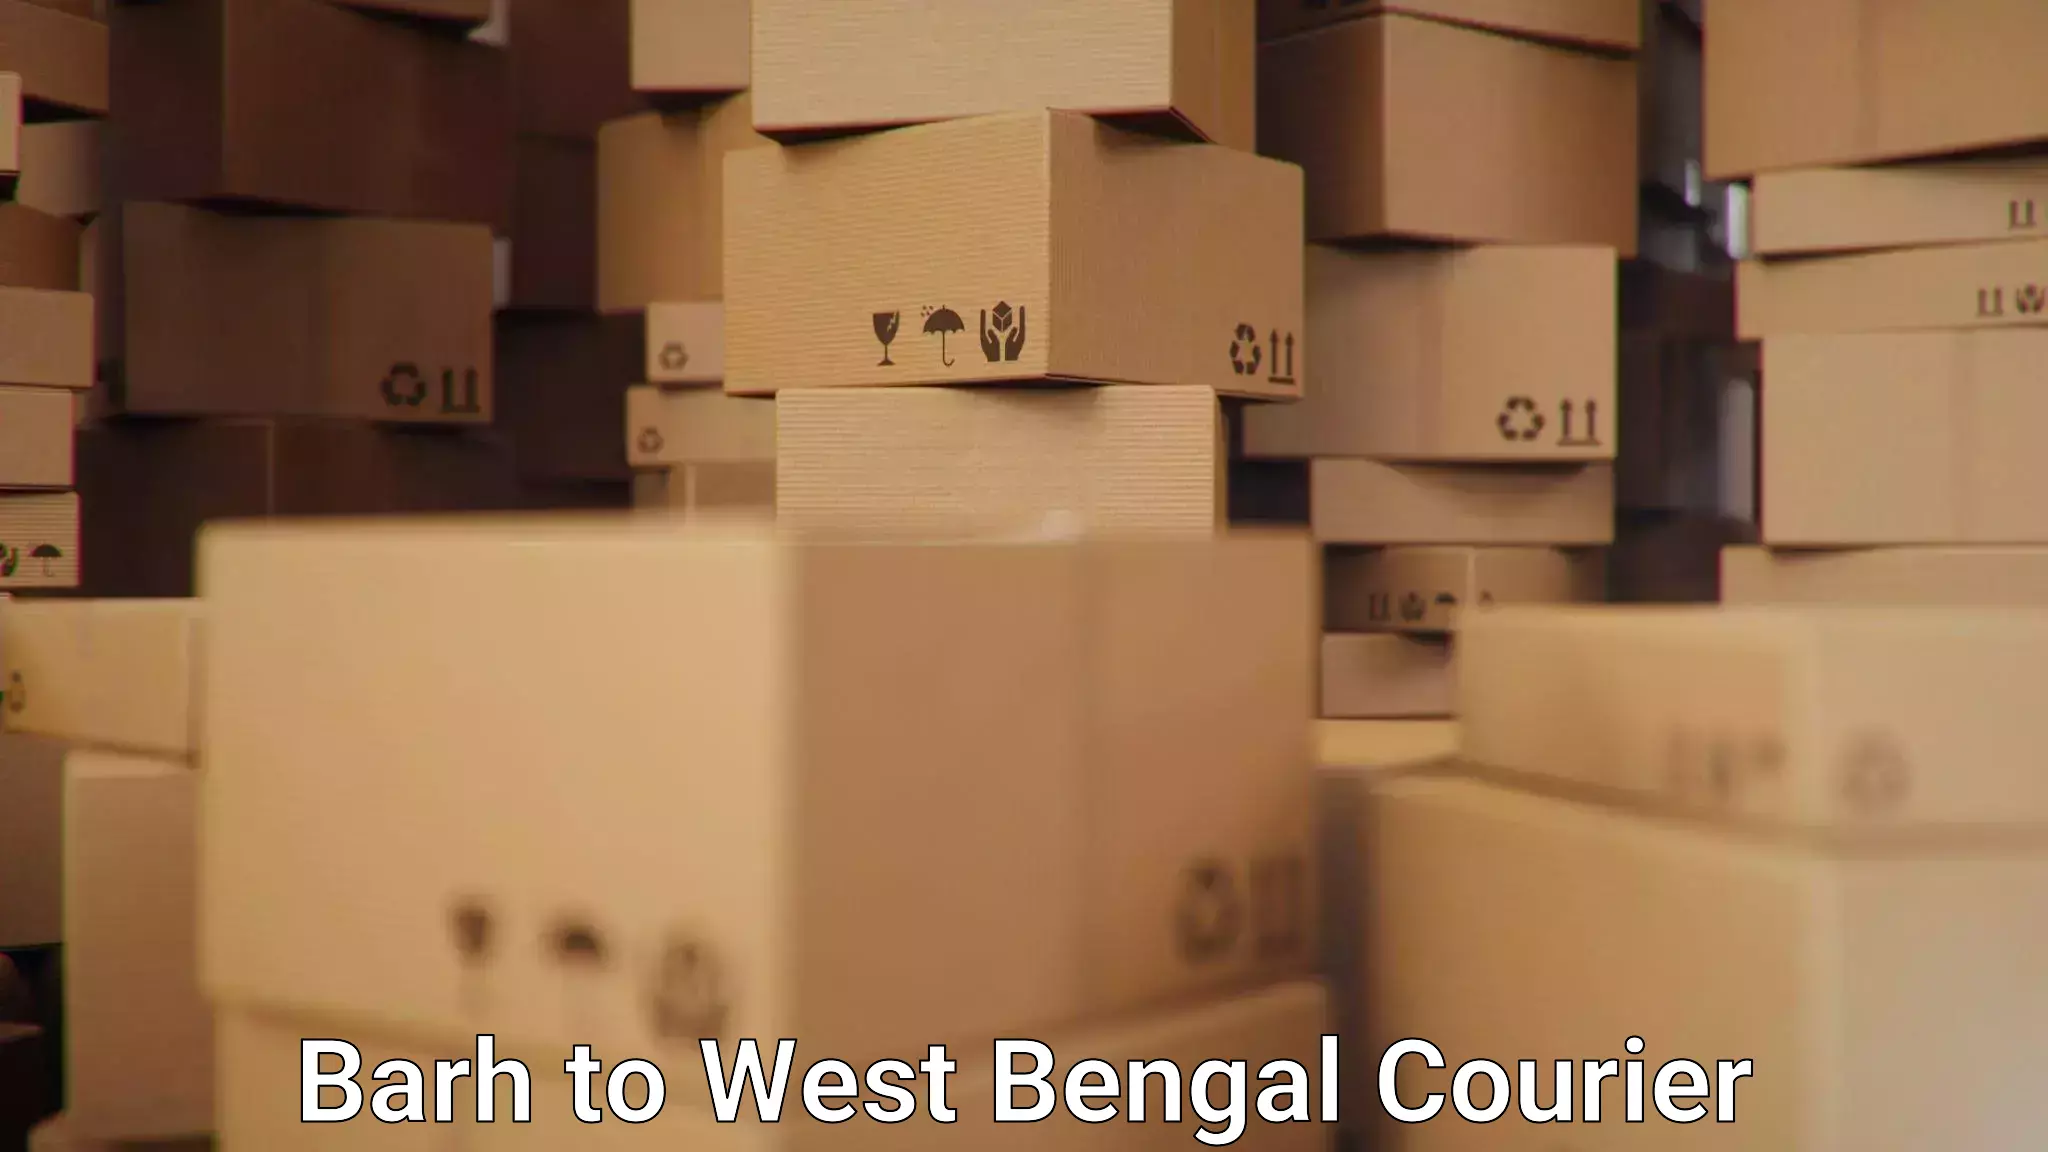 Courier service comparison Barh to Kolkata Port